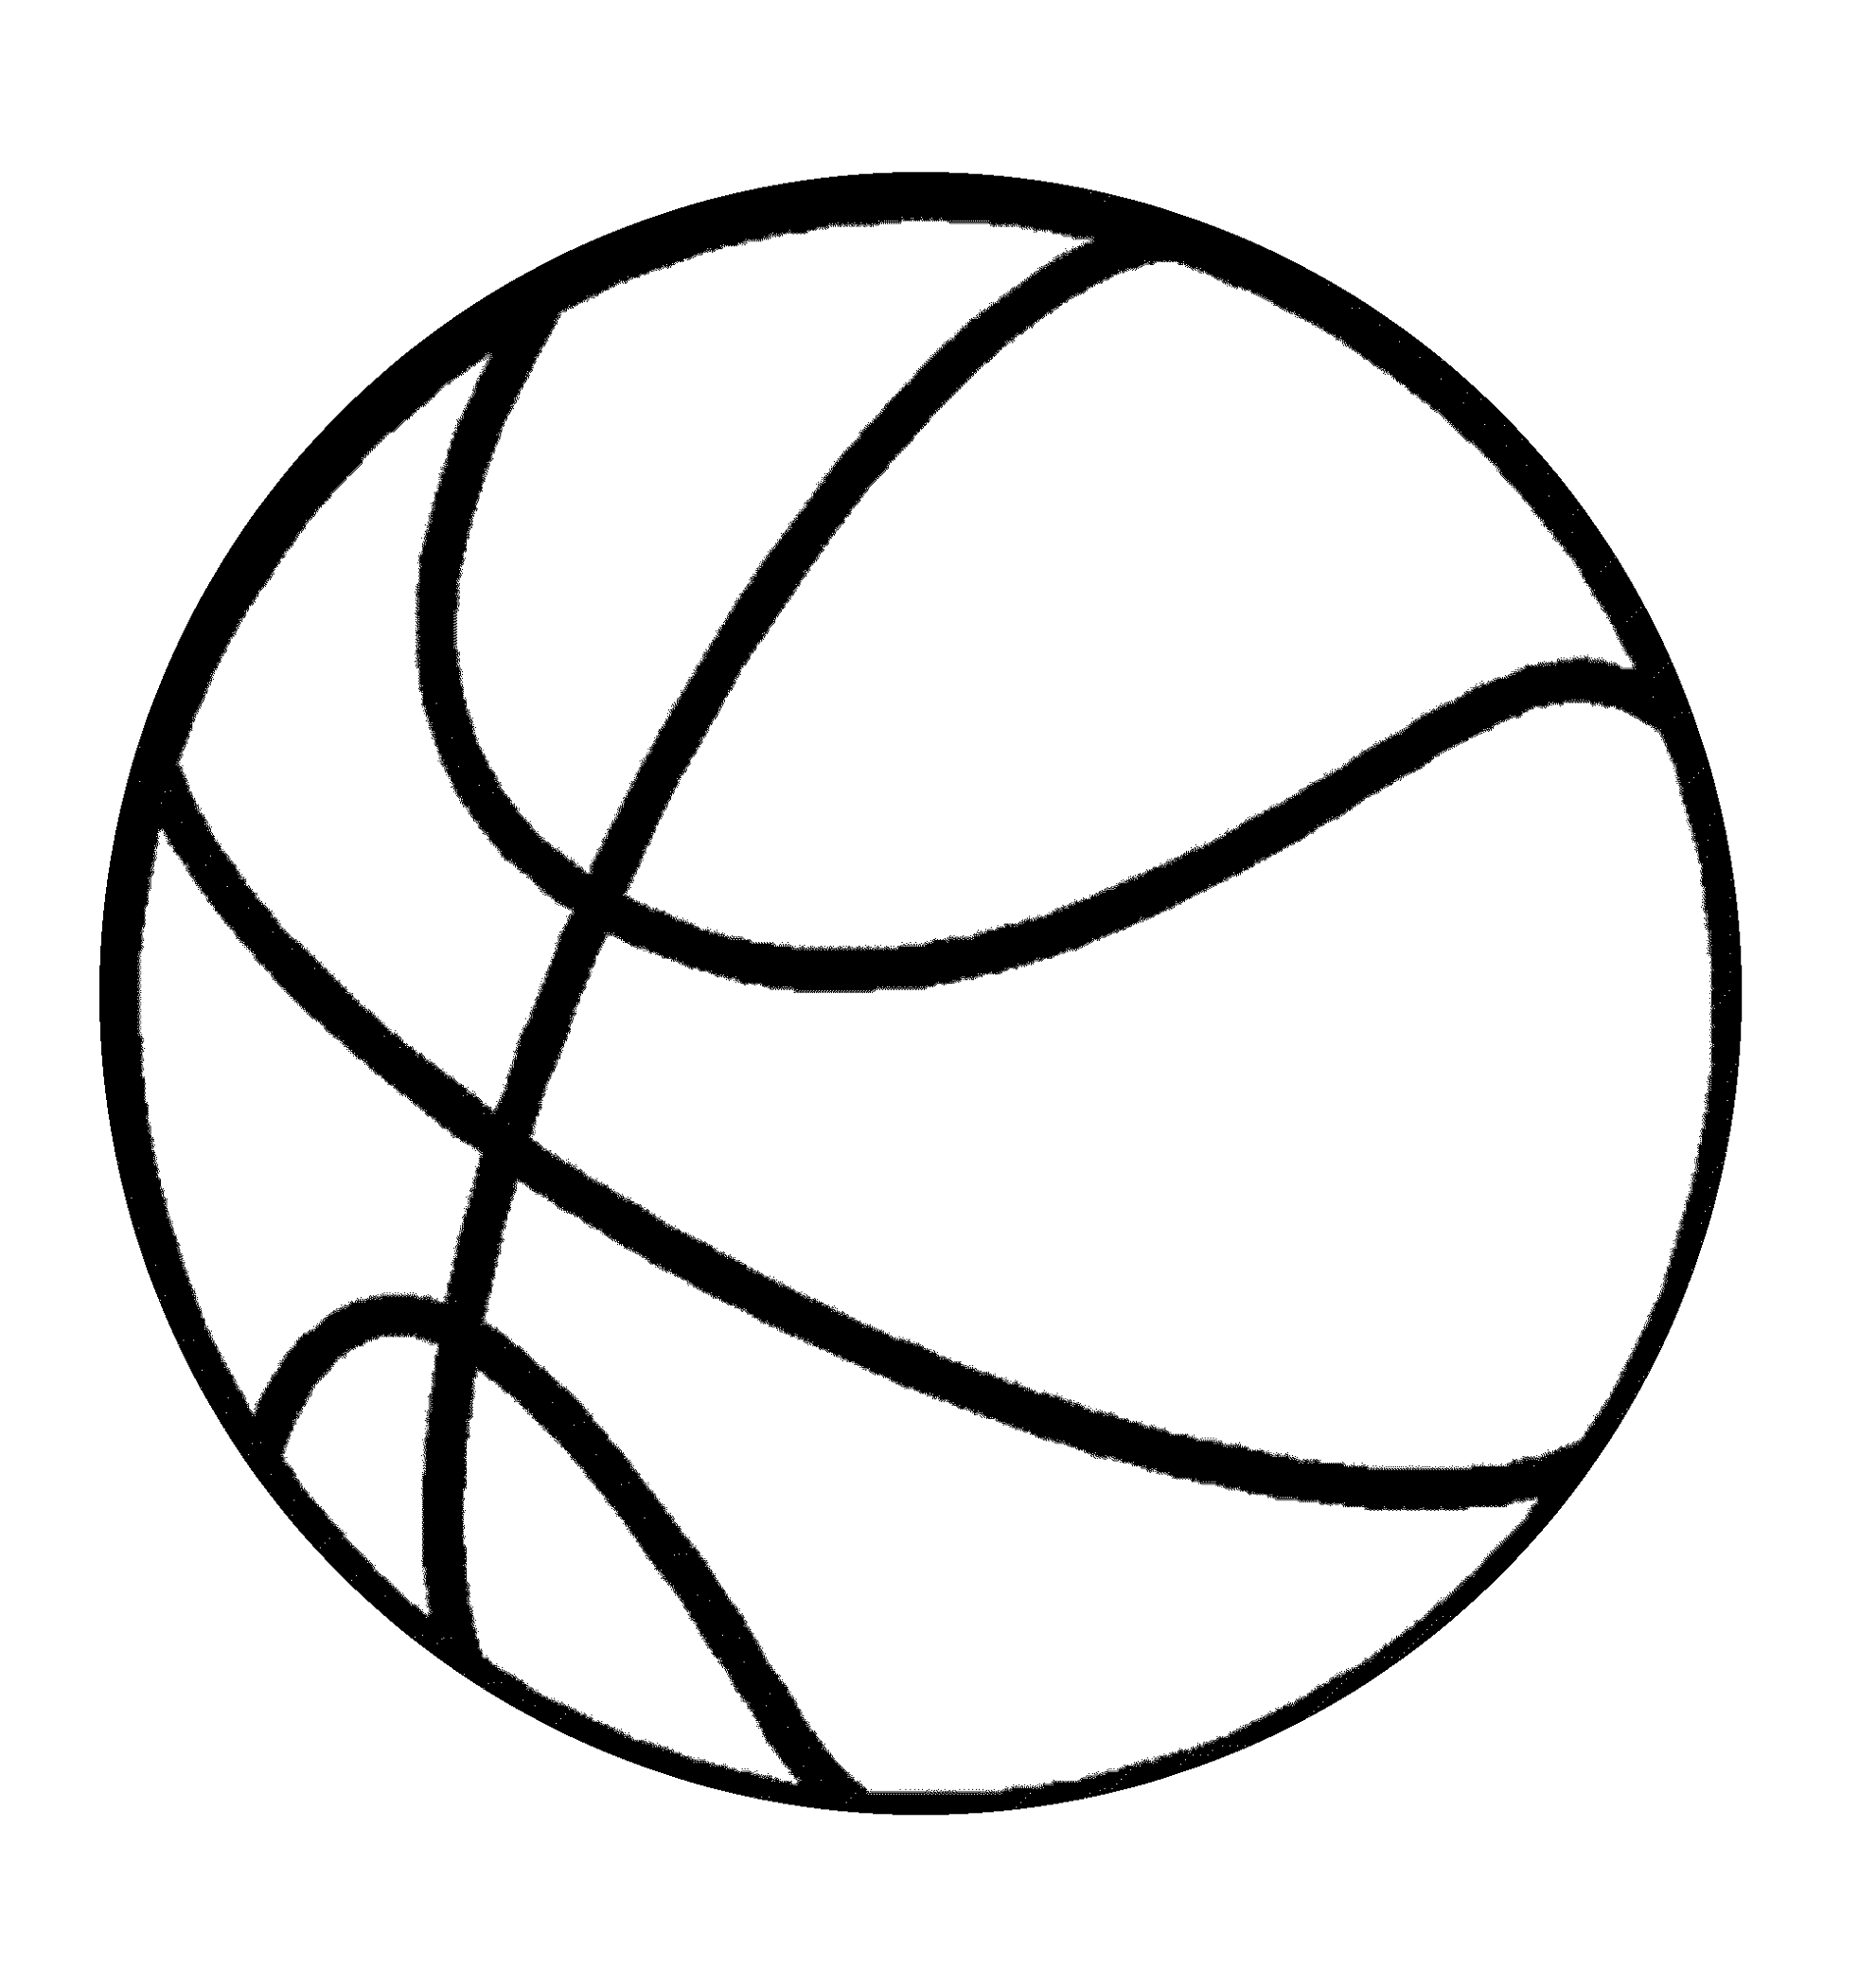 Free Printable Basketball Templates